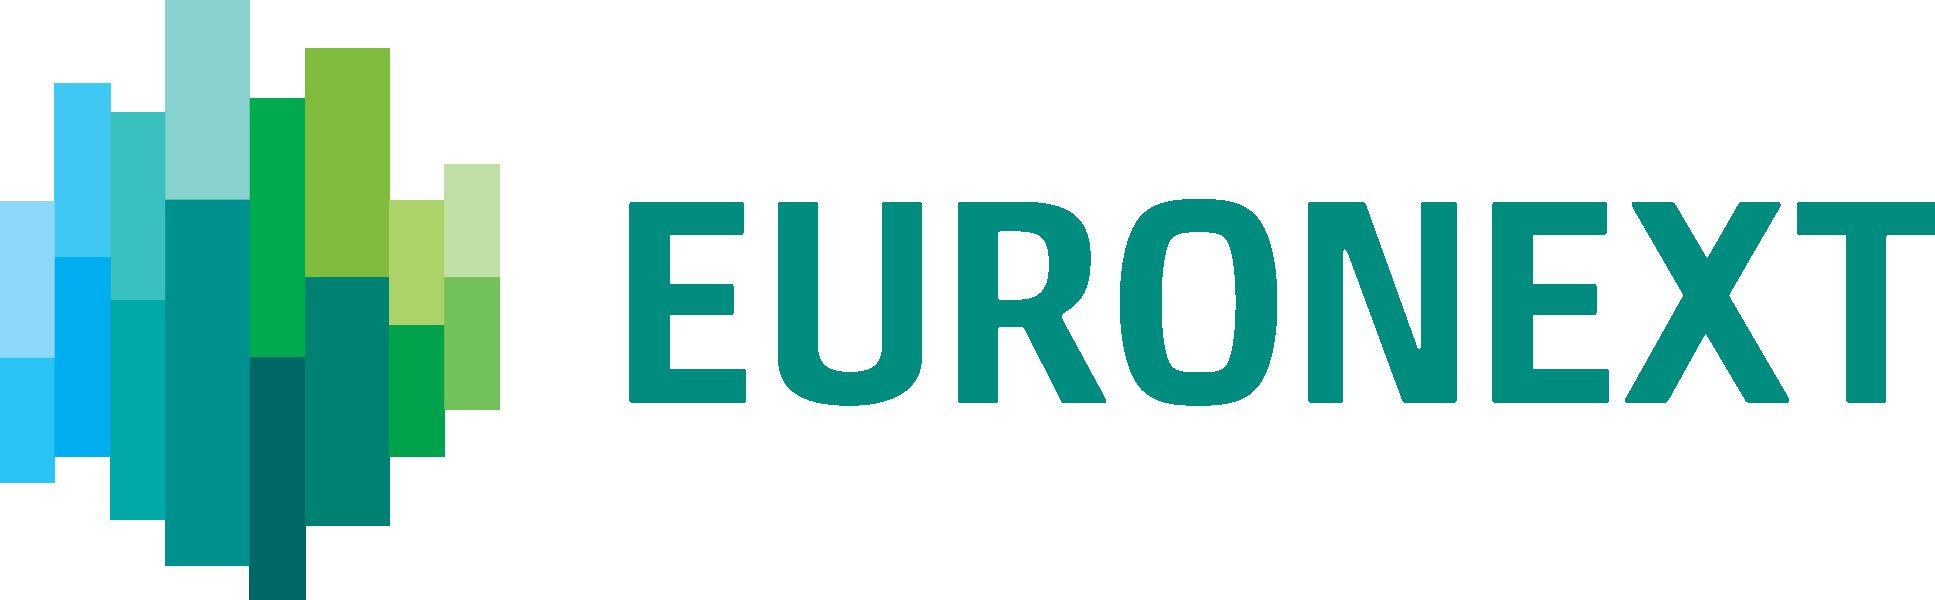 EURONEXT logo